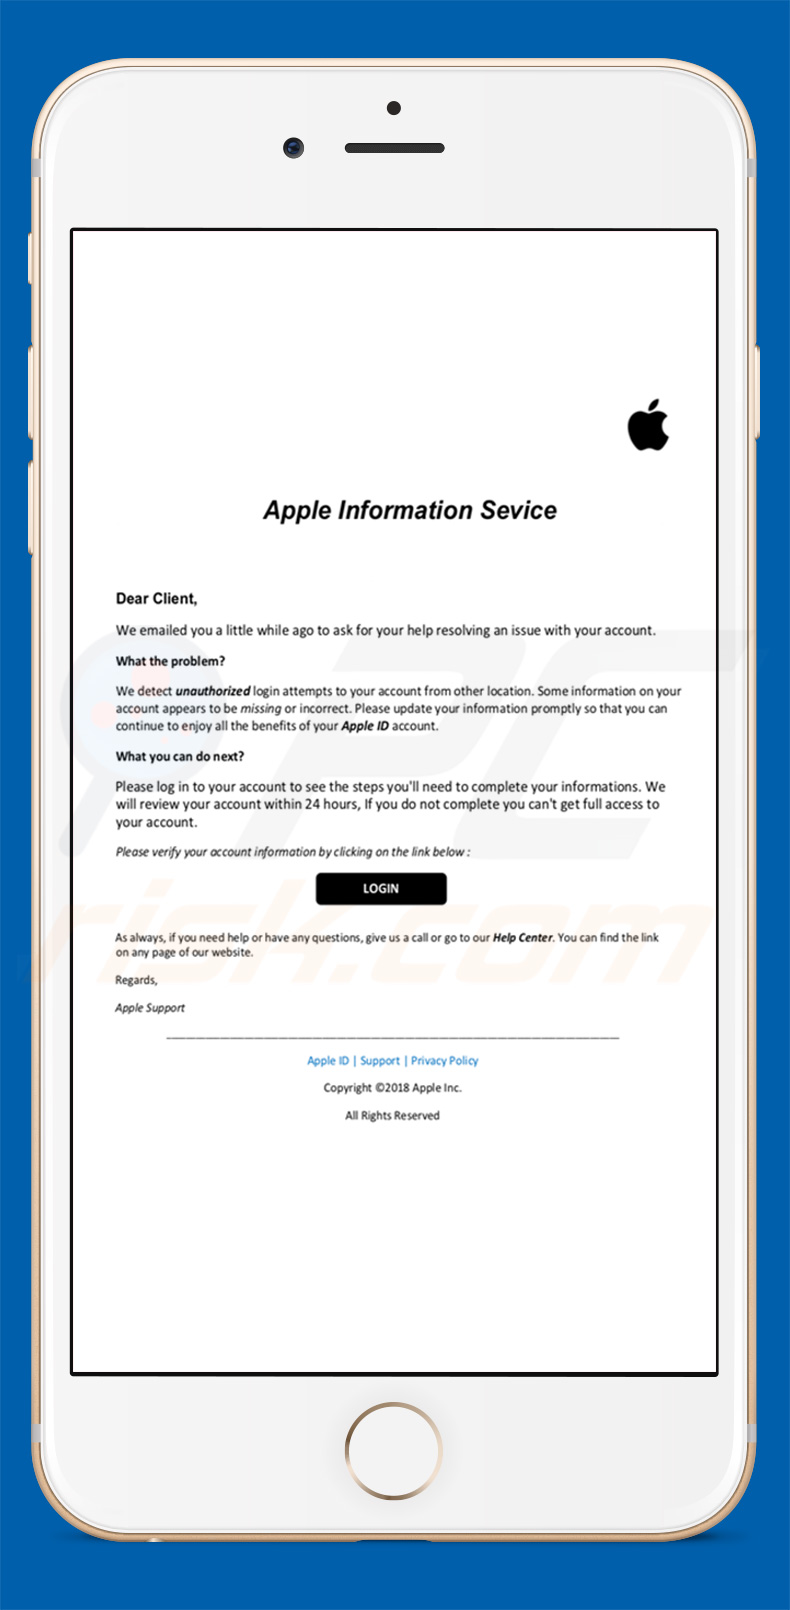 Apple Email Virus steelt accounts